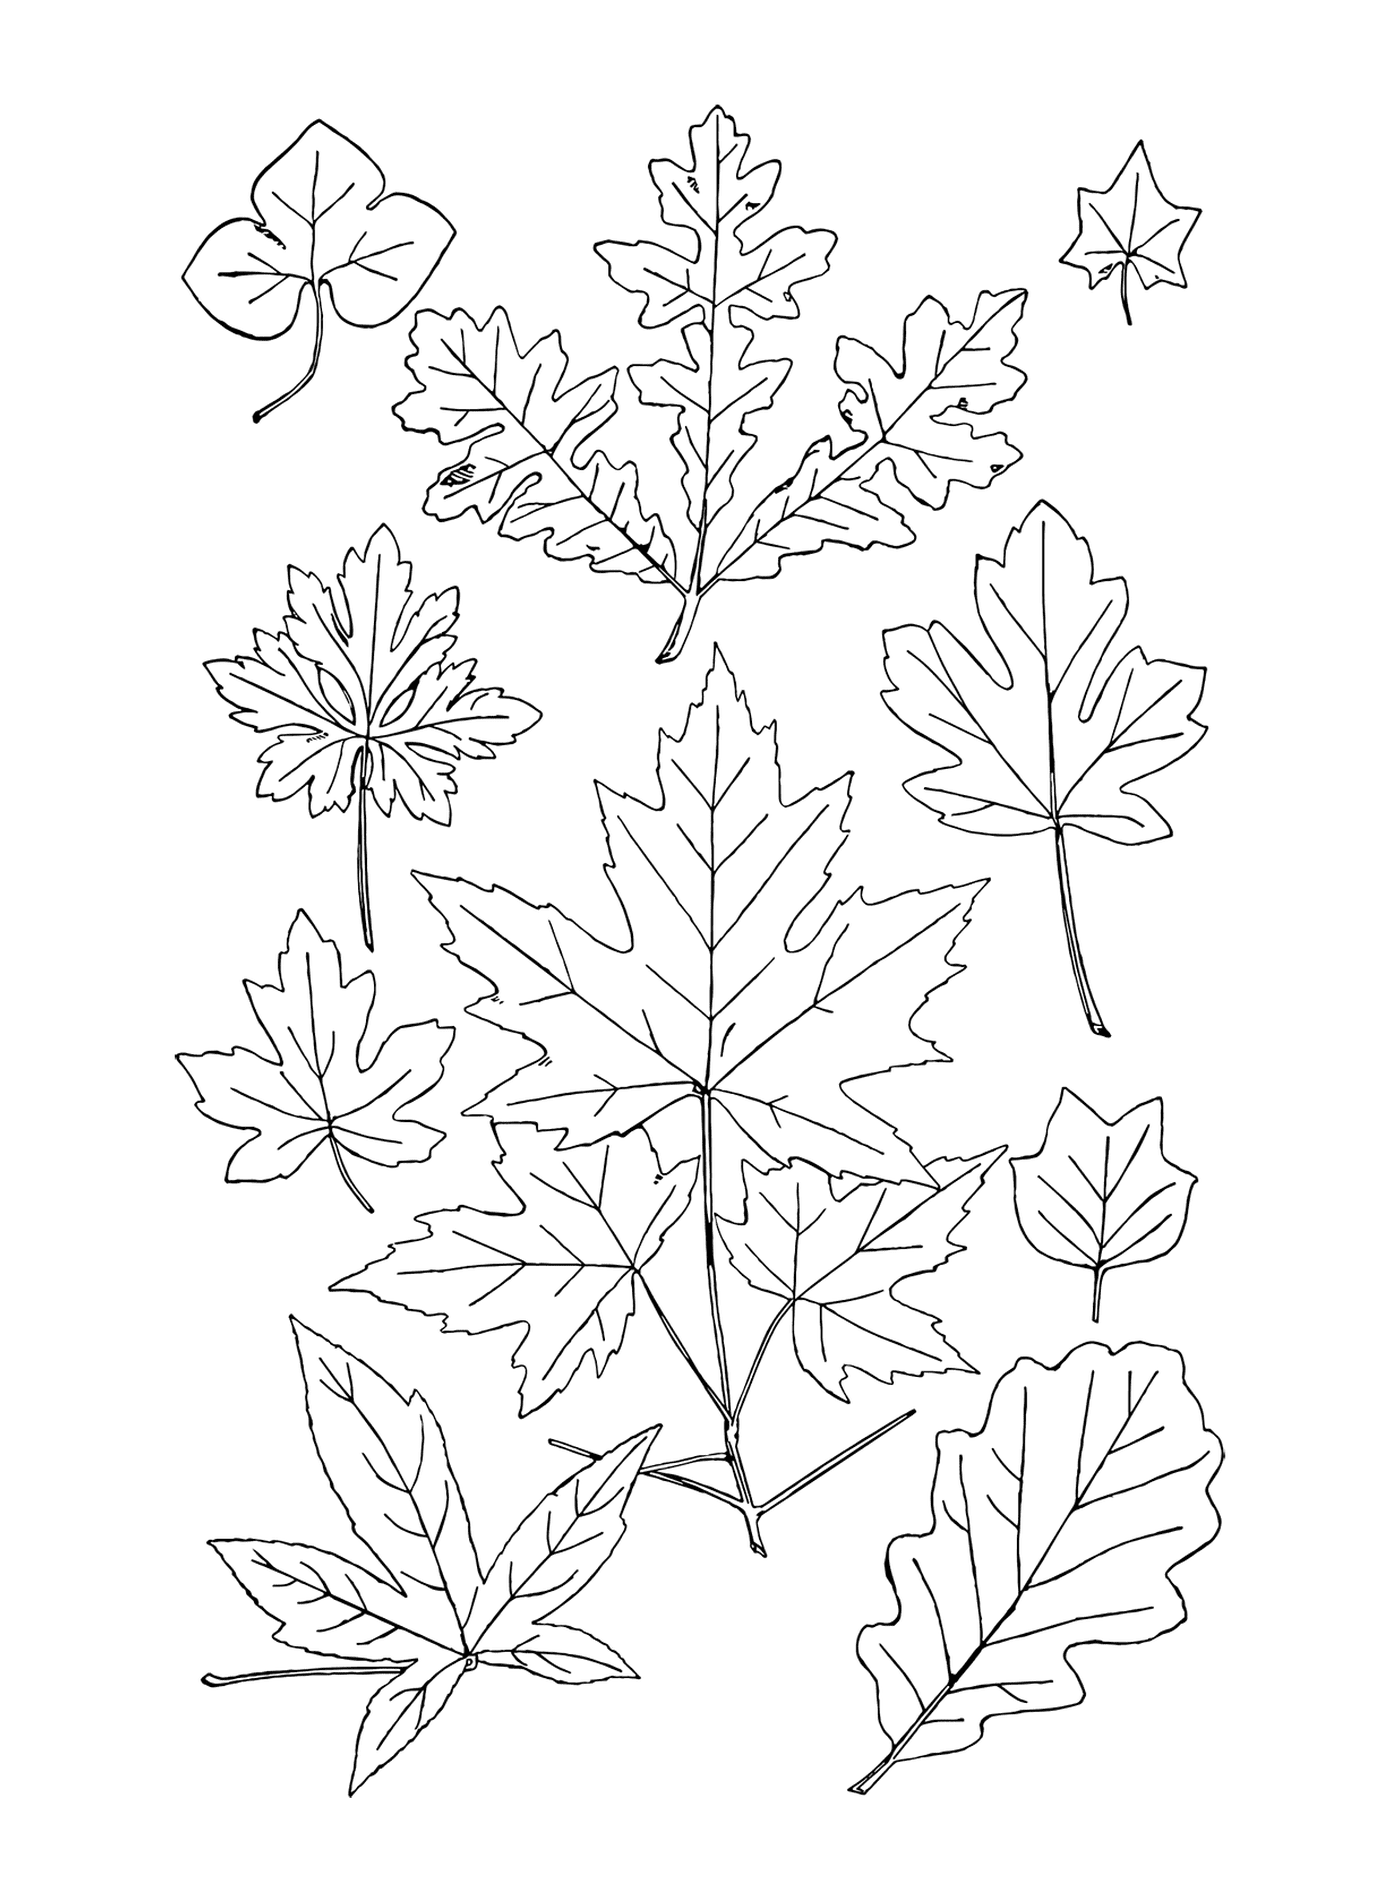   Une ligne de feuilles 